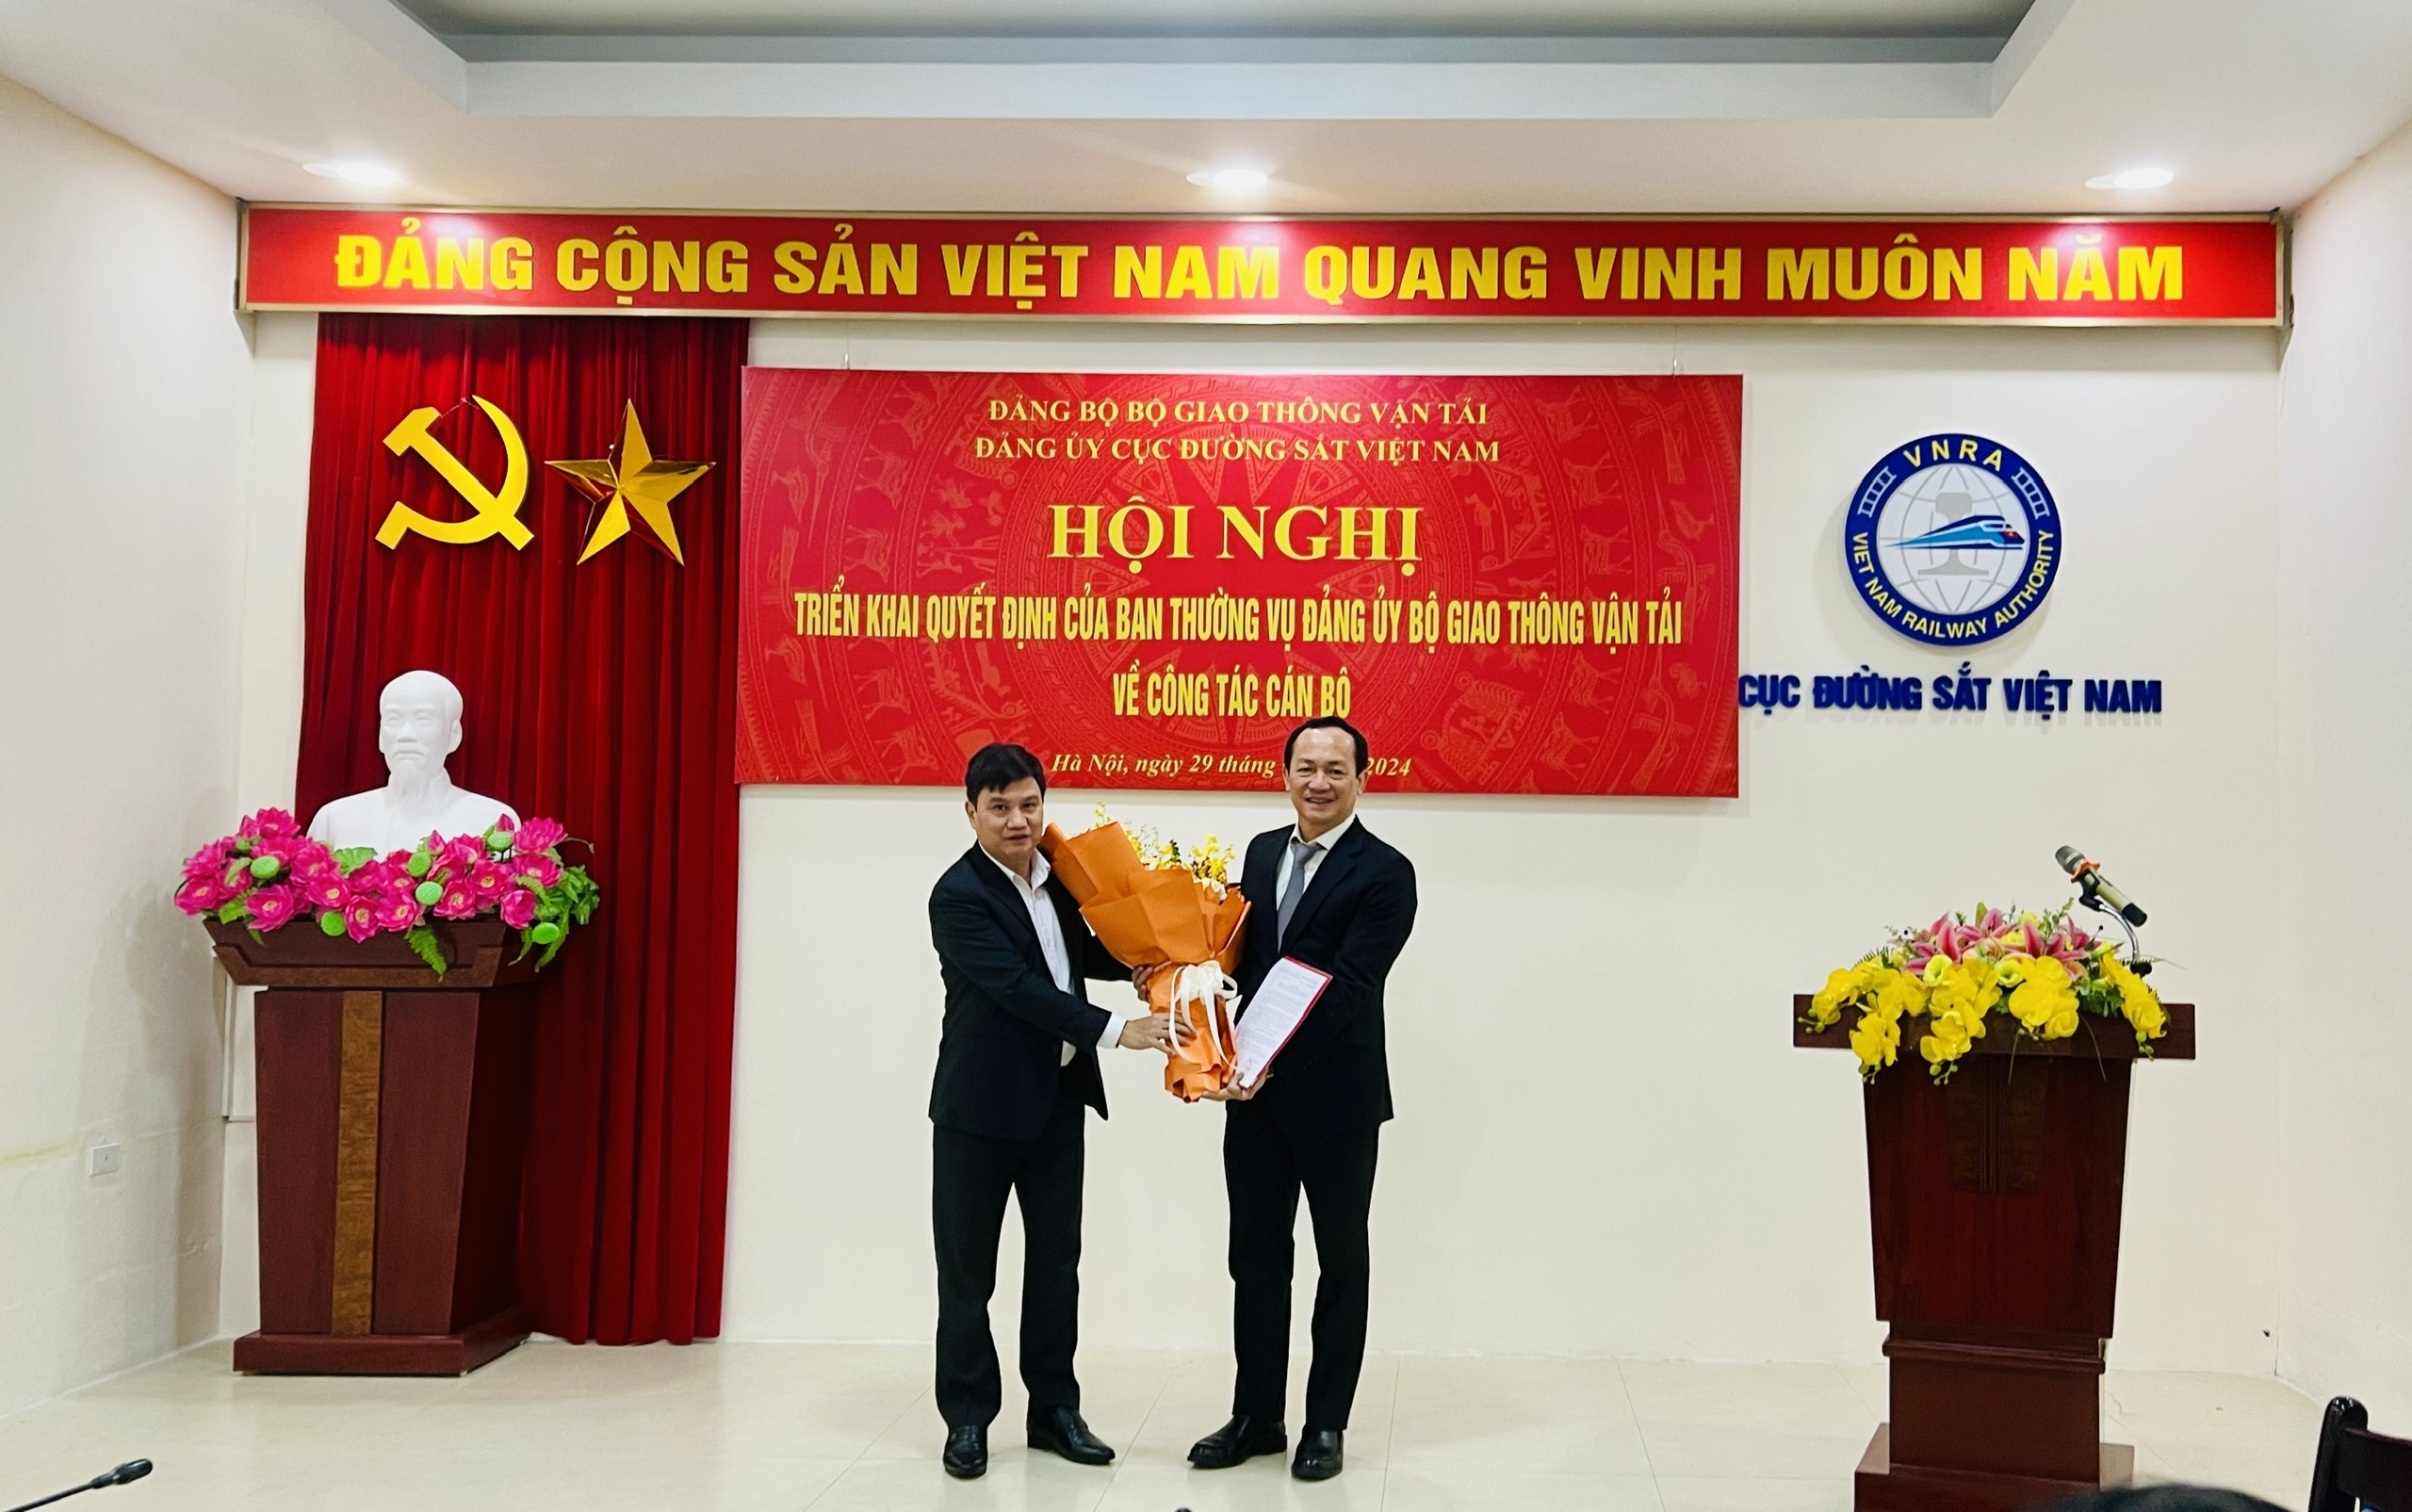 Hội nghị công bố quyết định Ủy viên Ban Thường vụ, Bí thư Đảng ủy Cục Đường sắt Việt Nam khóa V, nhiệm kỳ 2020 – 2025.